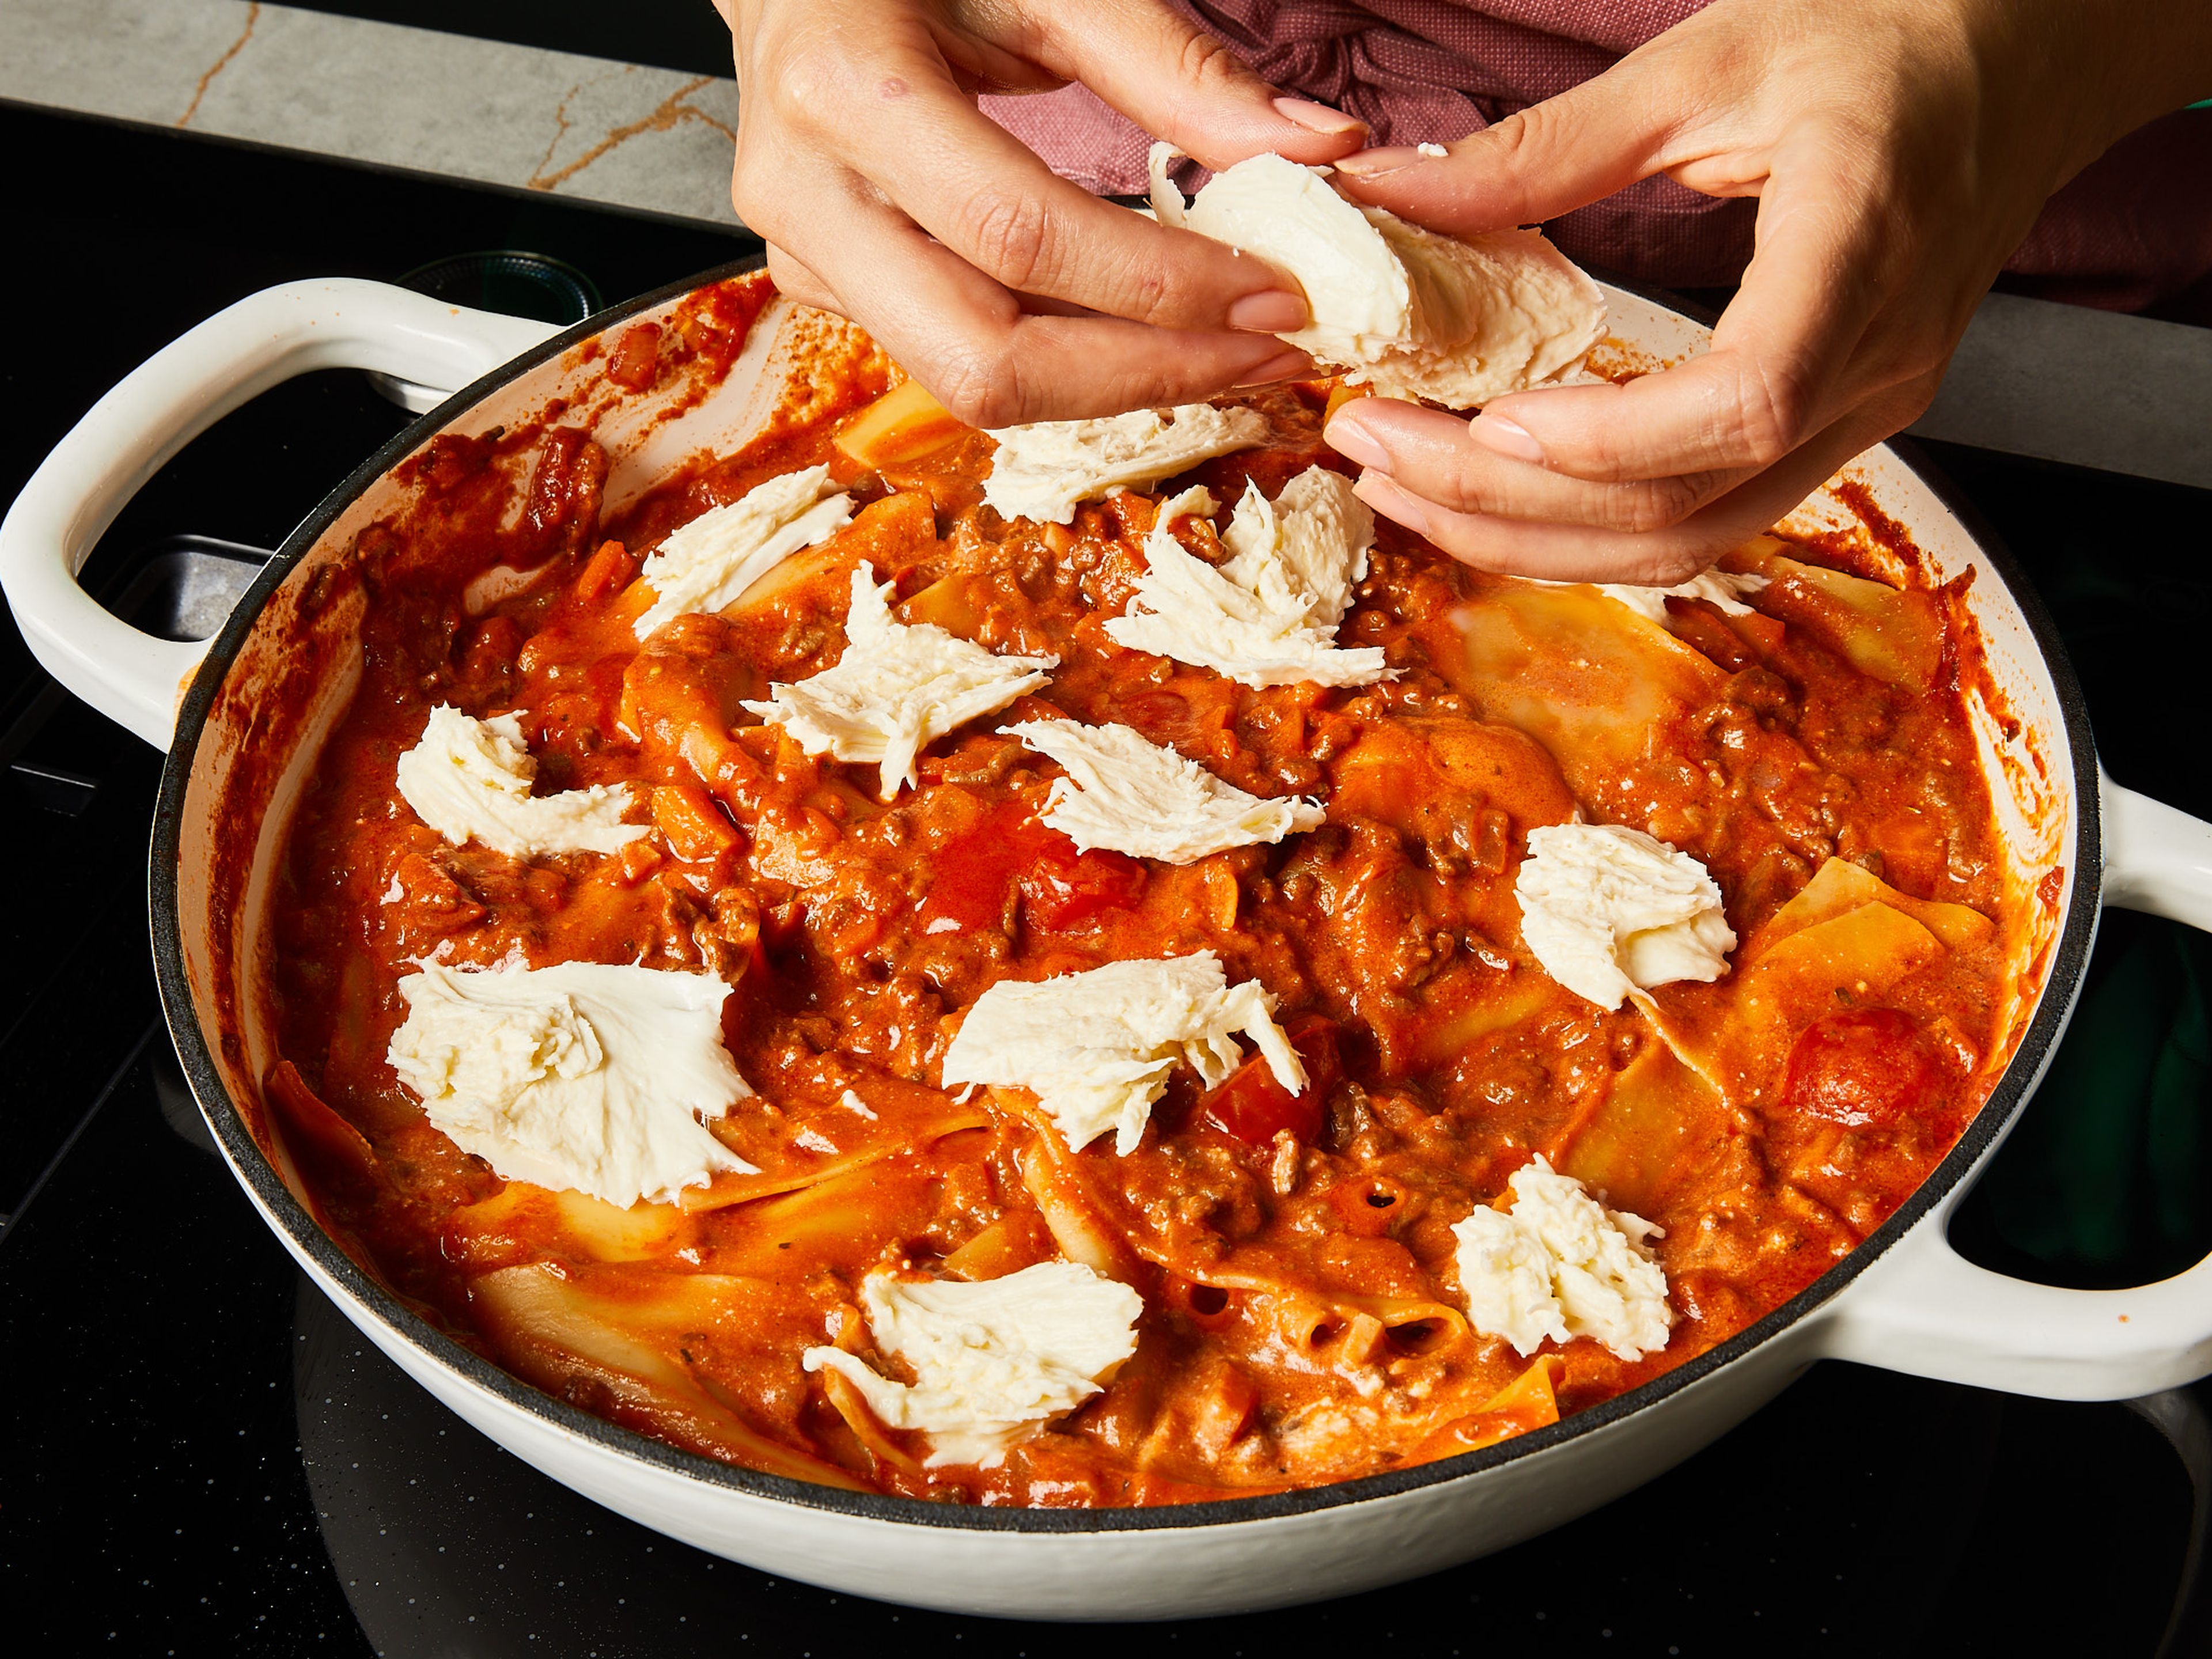 Den Deckel abnehmen und die Mascarpone einrühren. Mozzarella in Stücke zupfen und die Lasagne damit bedecken, den Parmesan darüber reiben. Wenn du eine ofenfeste Pfanne verwendest, bei 230°C Ober-/Unterhitze für ca. 10 Min. im Ofen überbacken, bis der Käse gebräunt und knusprig ist. Alternativ für ca. 10 Min. zugedeckt auf dem Herd stehen lassen, bis der Käse geschmolzen ist. Mit frischem Basilikum garnieren und servieren.